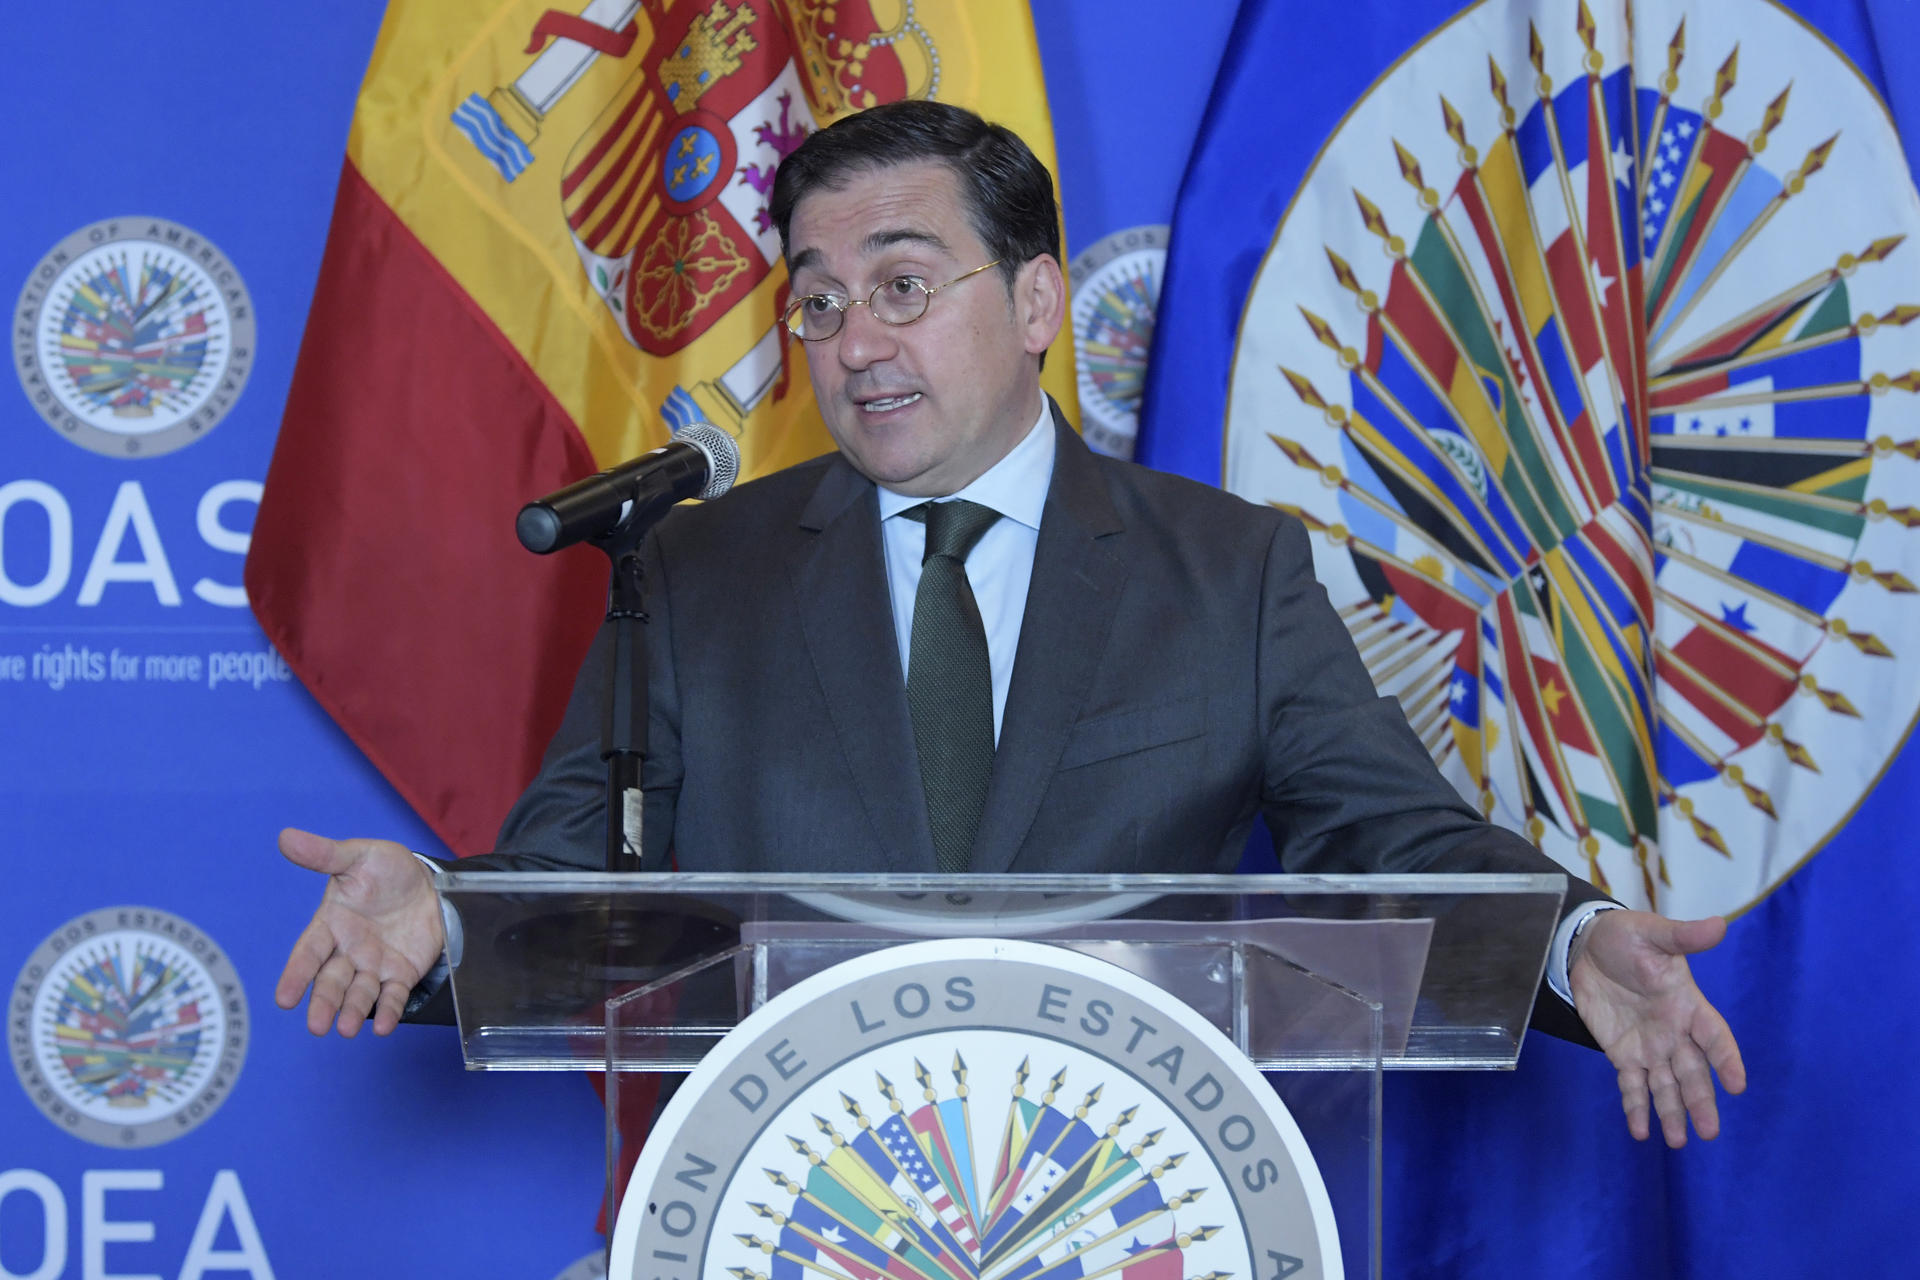 “España siempre va a ser solidaria con quienes necesiten asilo”, dijo el ministro de asuntos exteriores desde EEUU